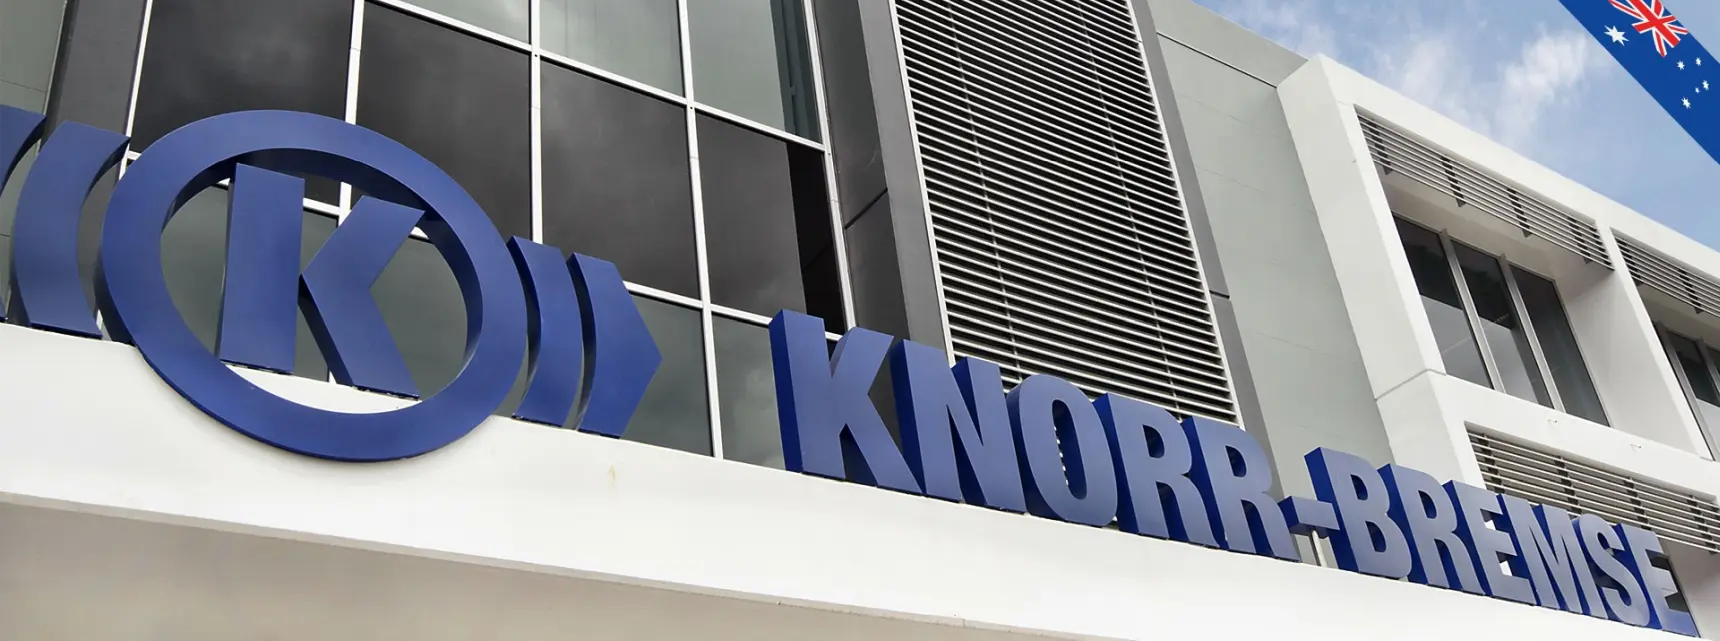 Výrobce vlakových brzd Knorr-Bremse zkracuje pracovní dobu na 40 hodin